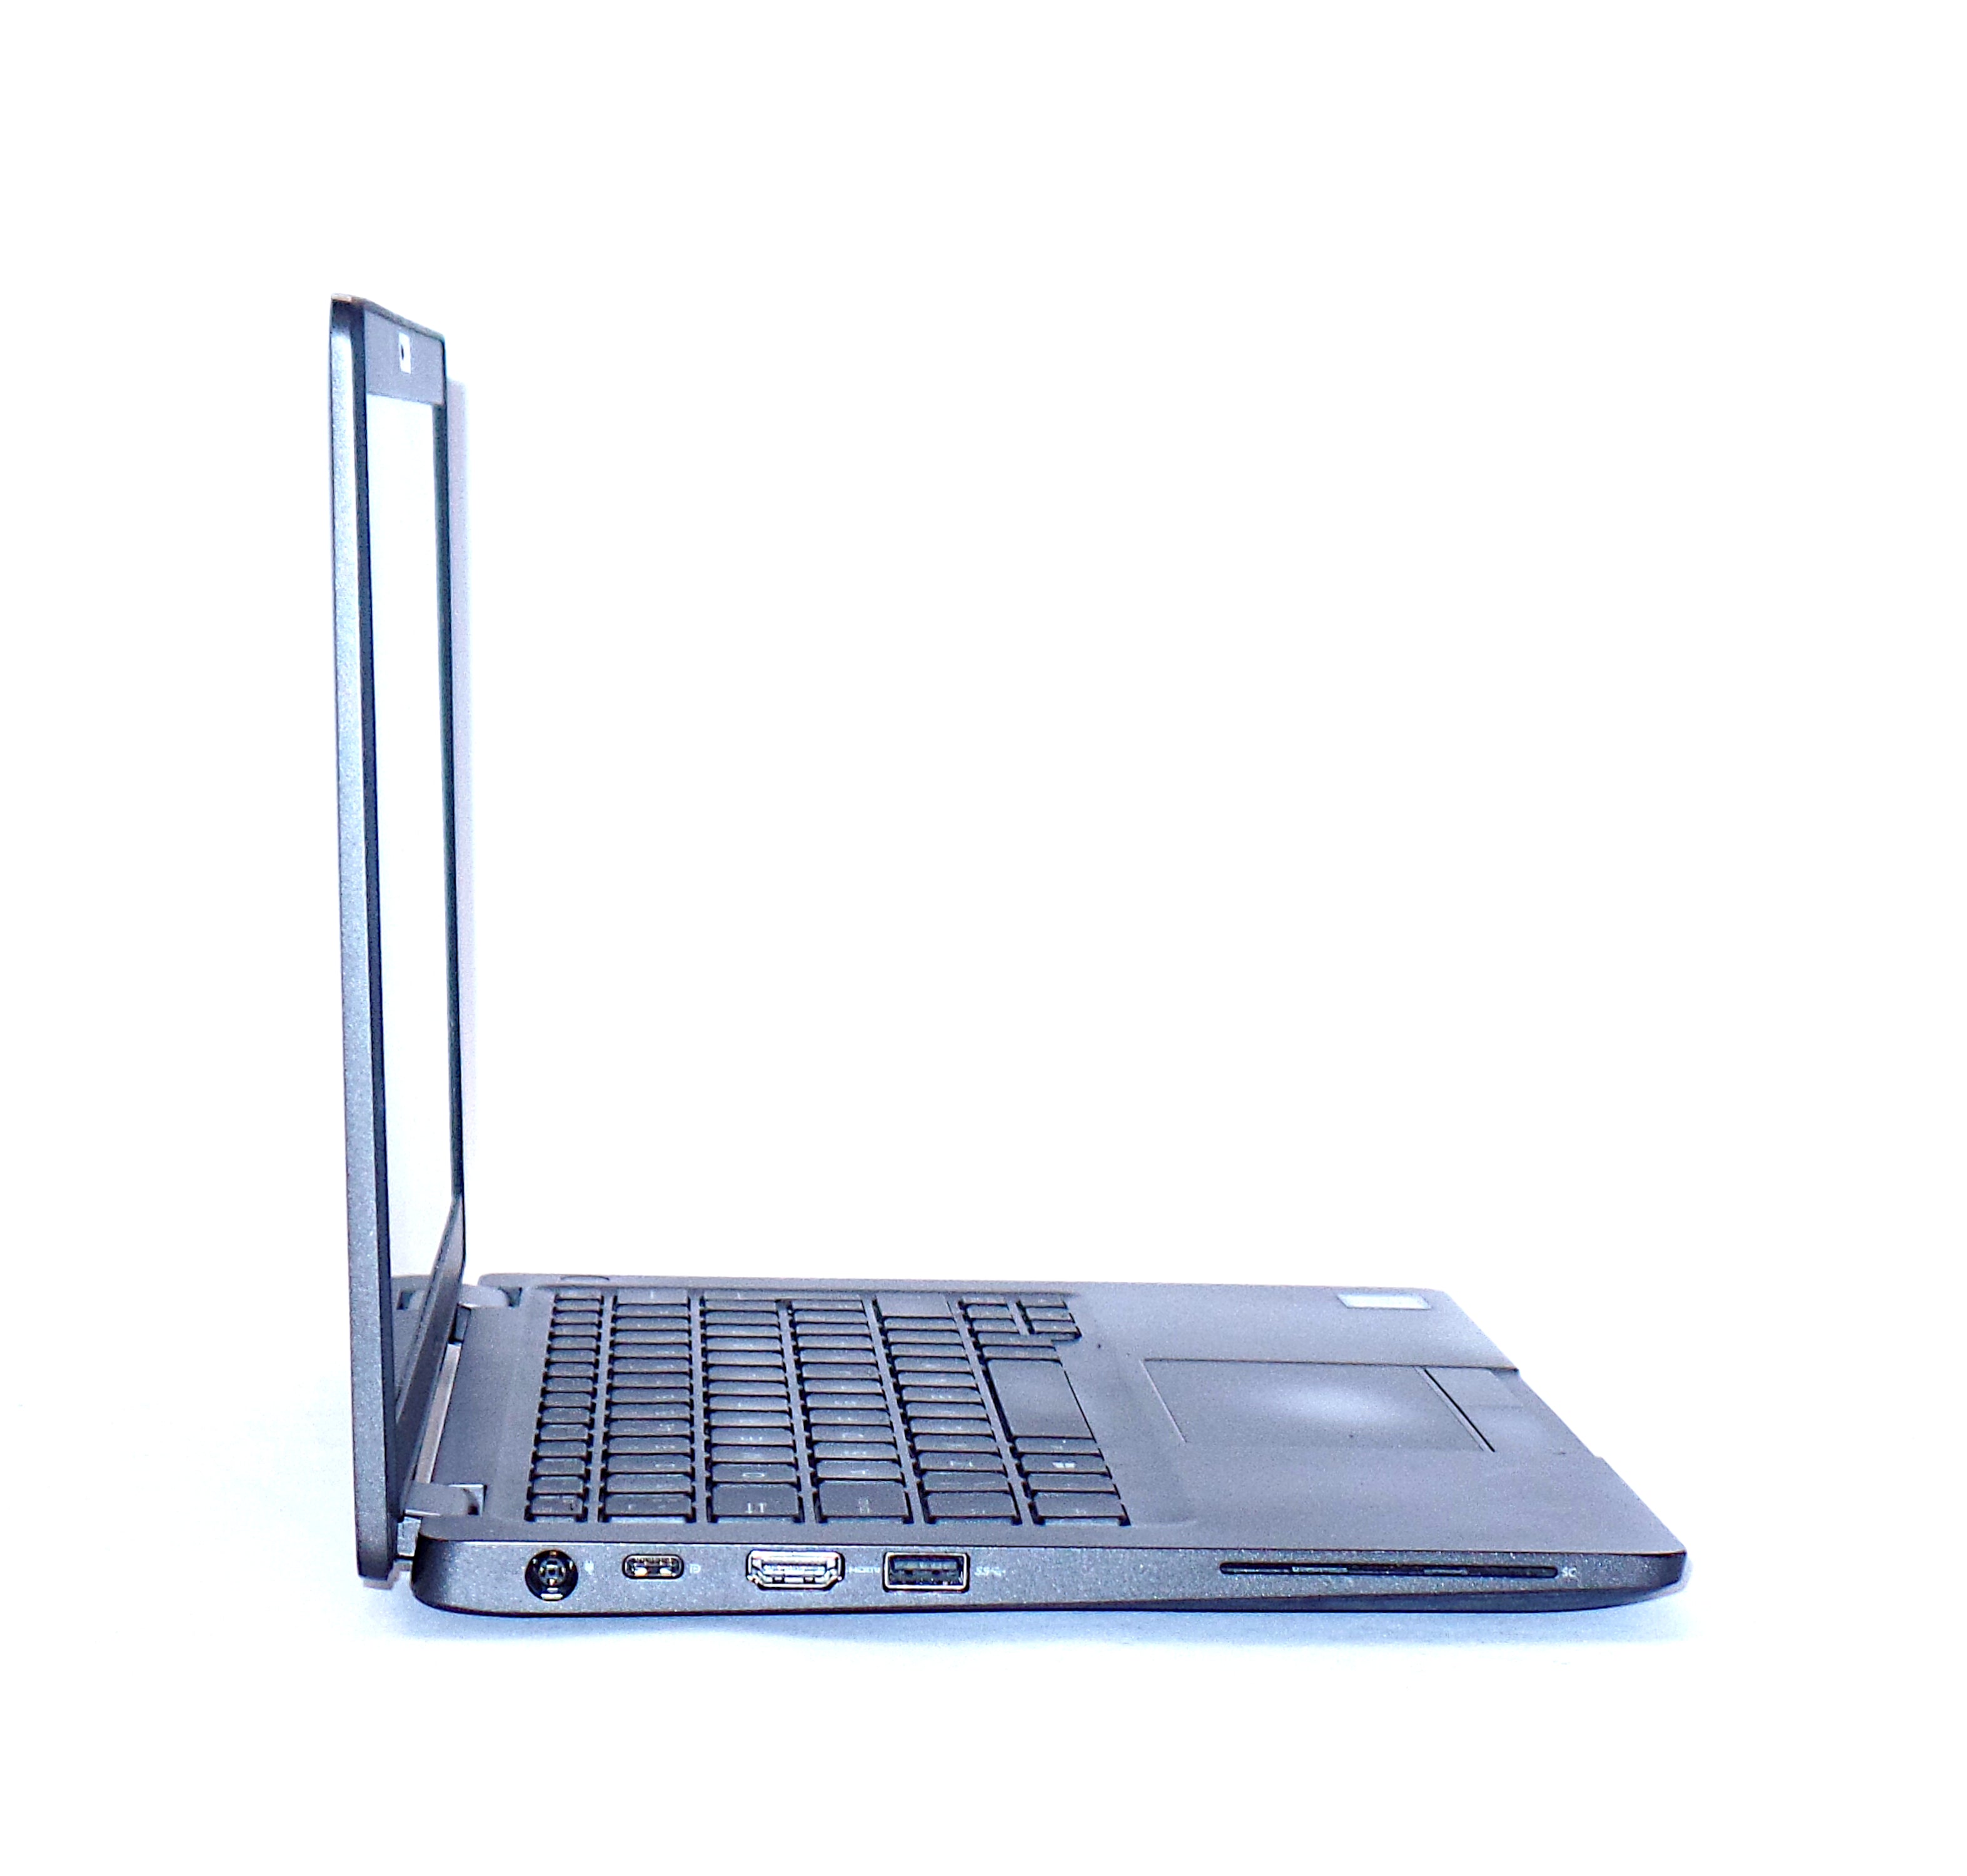 Dell Latitude 5300 Laptop, 13.2" Core i5 8th Gen, 8GB RAM, 256GB SSD